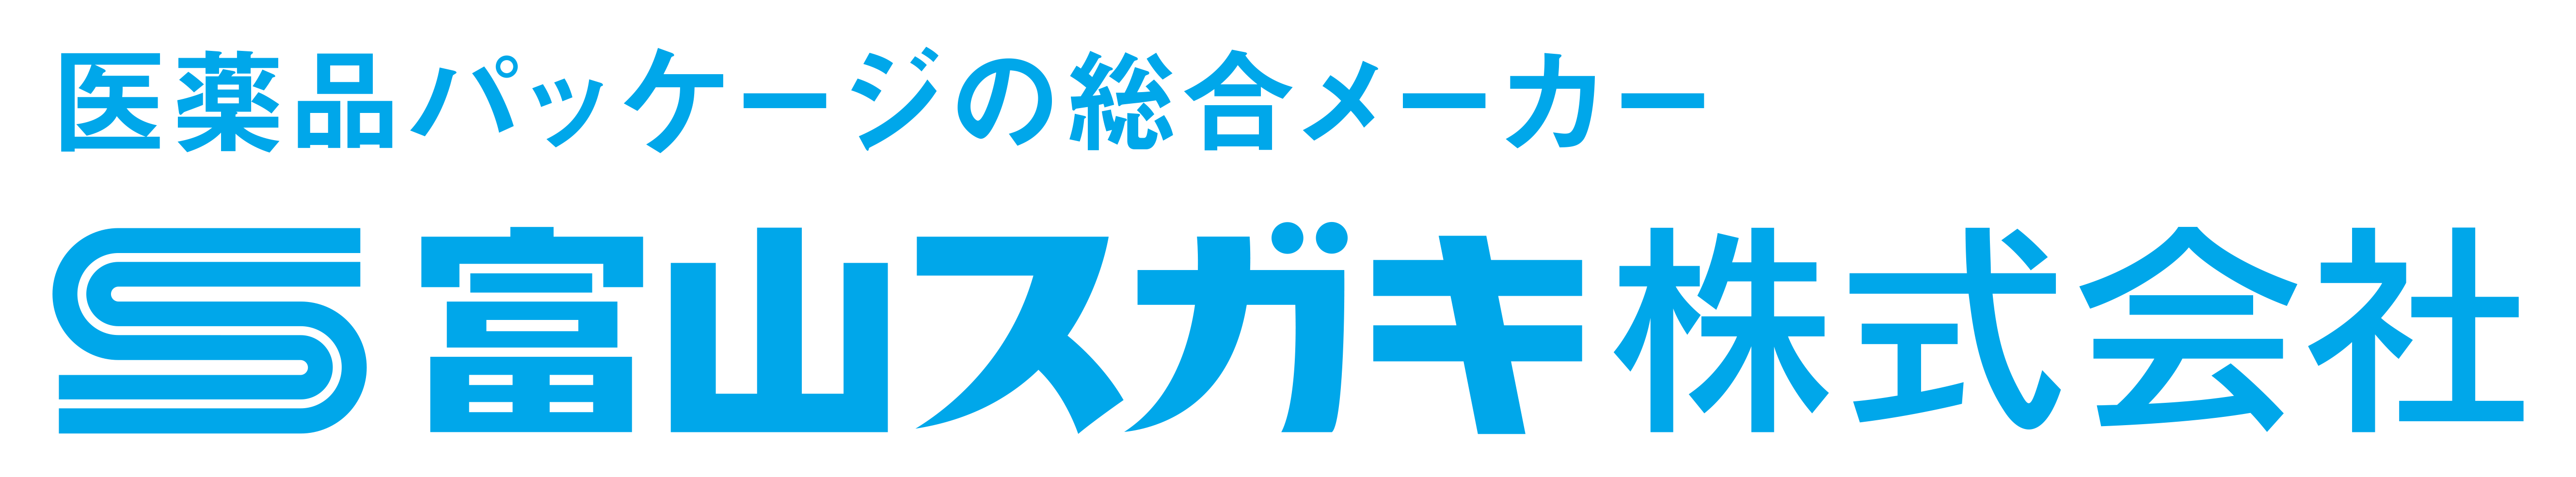 富山スガキ株式会社ロゴマーク